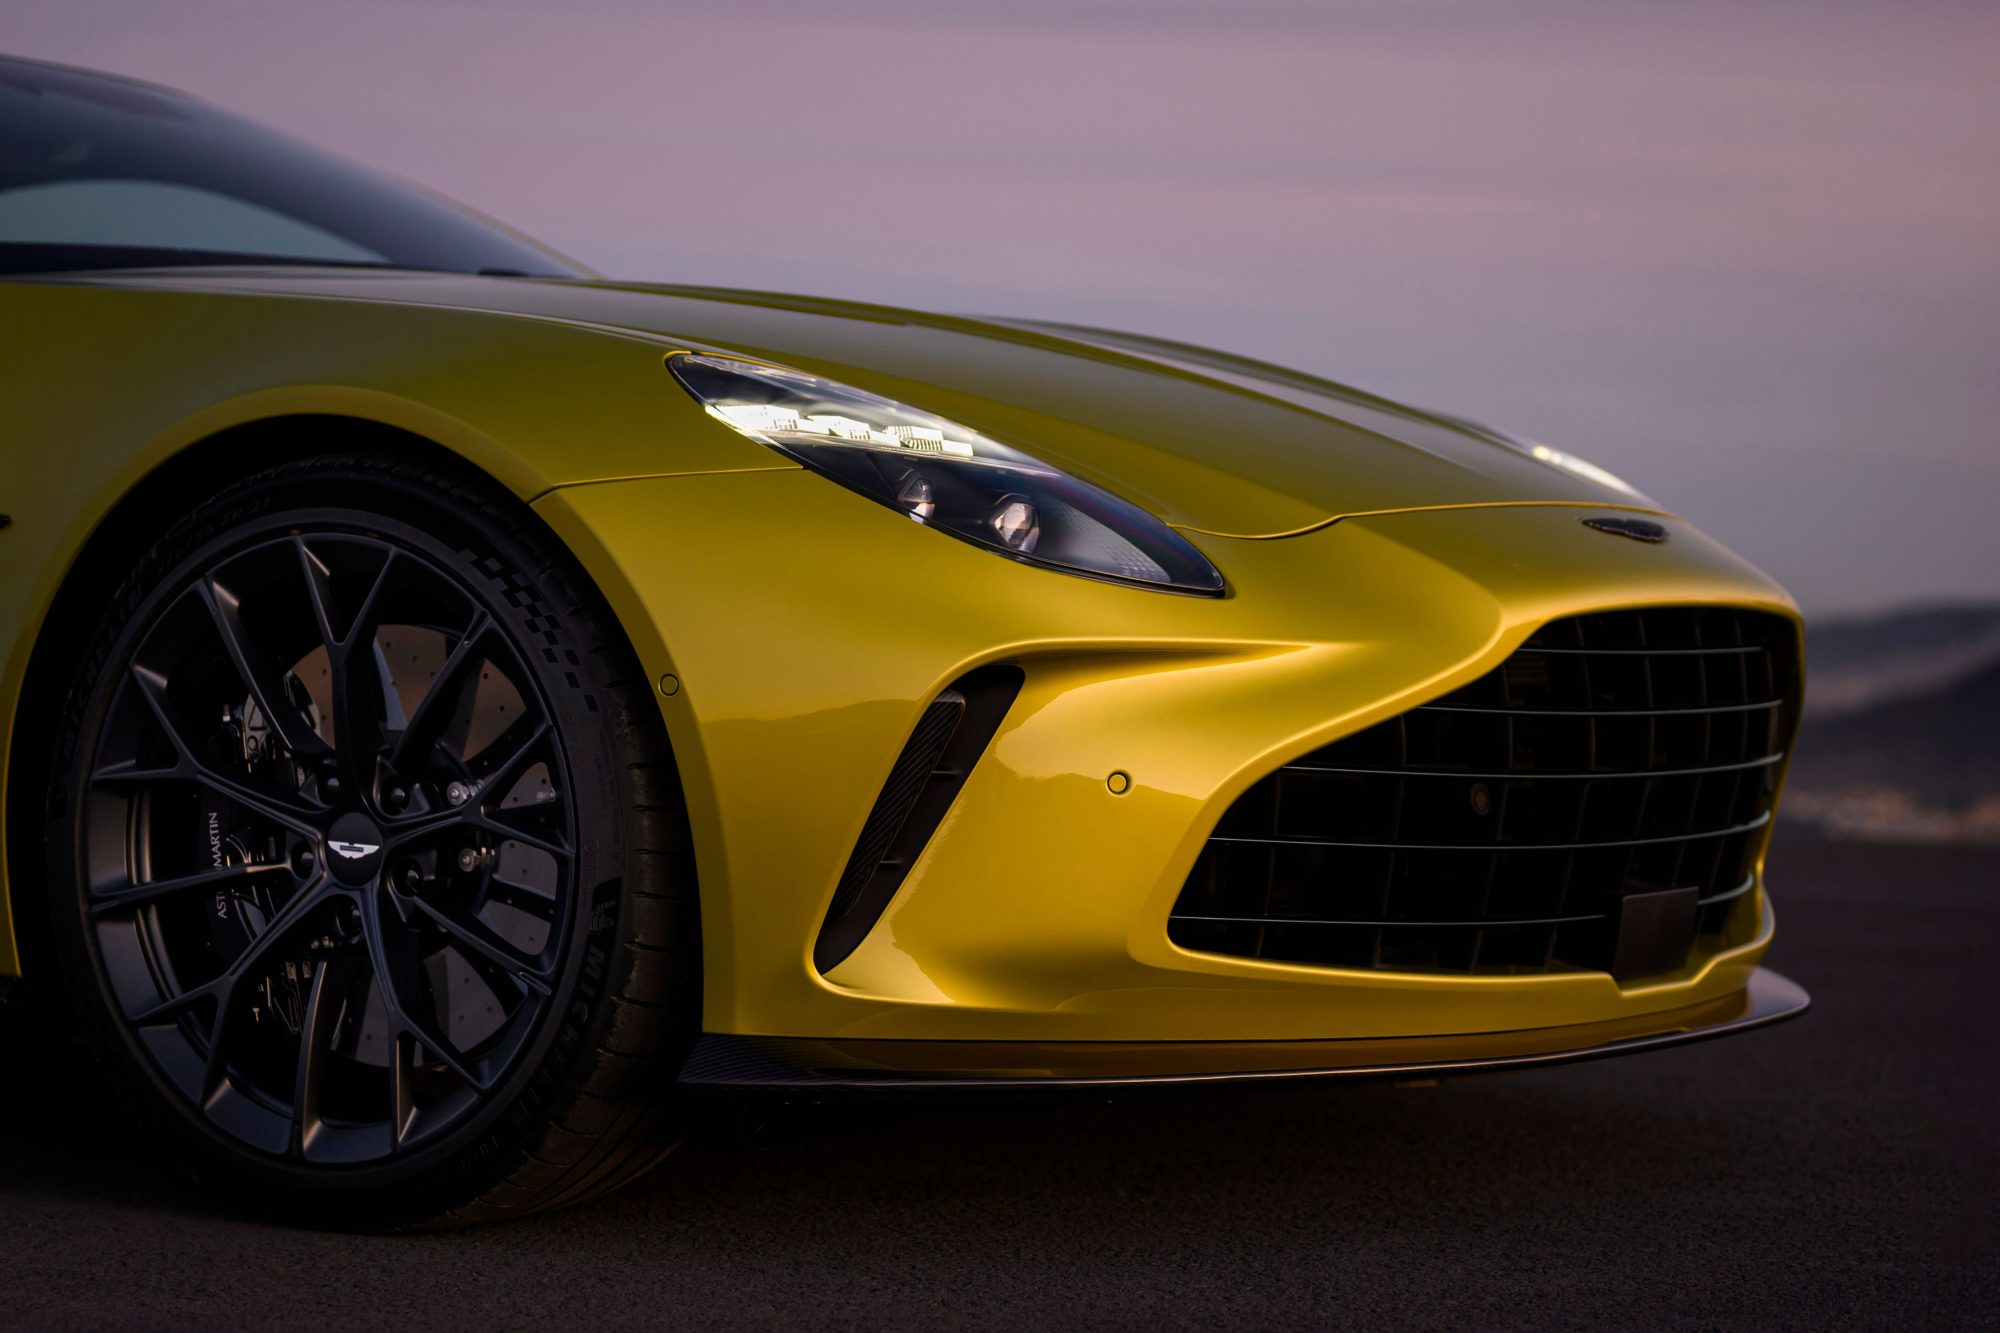 Aston Martin unveils a new Vantage road car